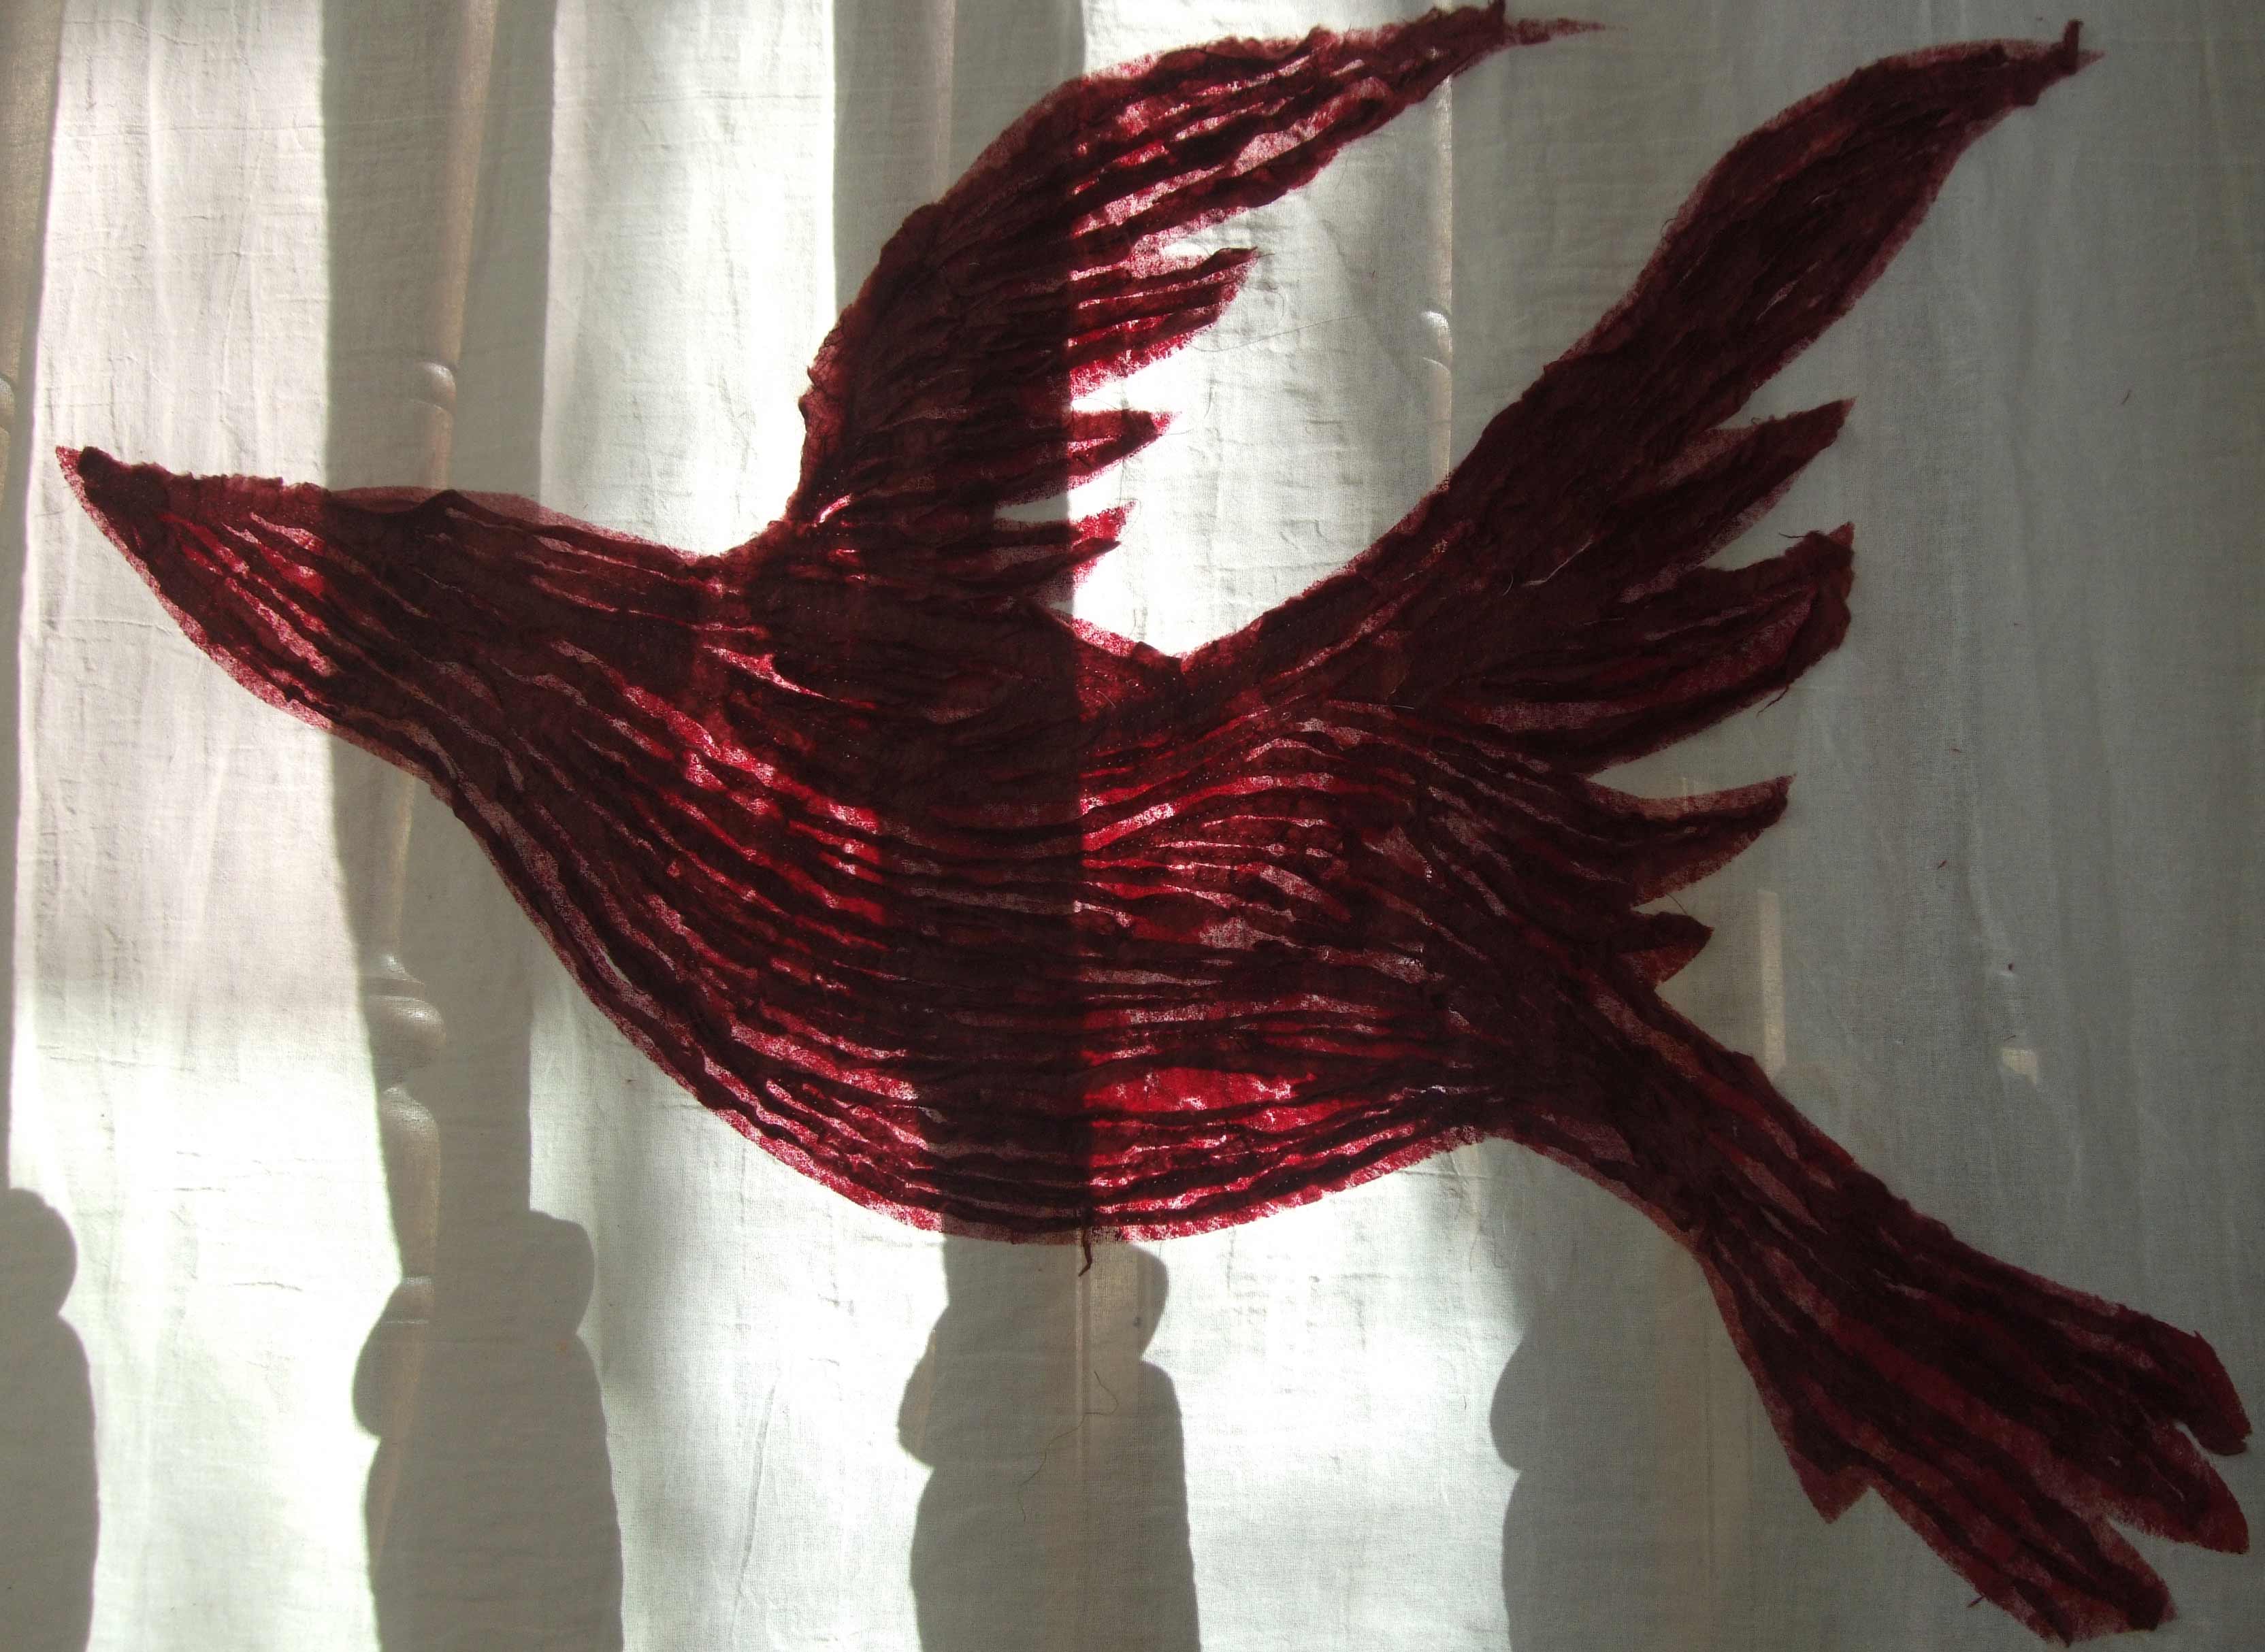 Rode vogel uit het Feest van de Geest werkstuk in de Andrieskerk 2016